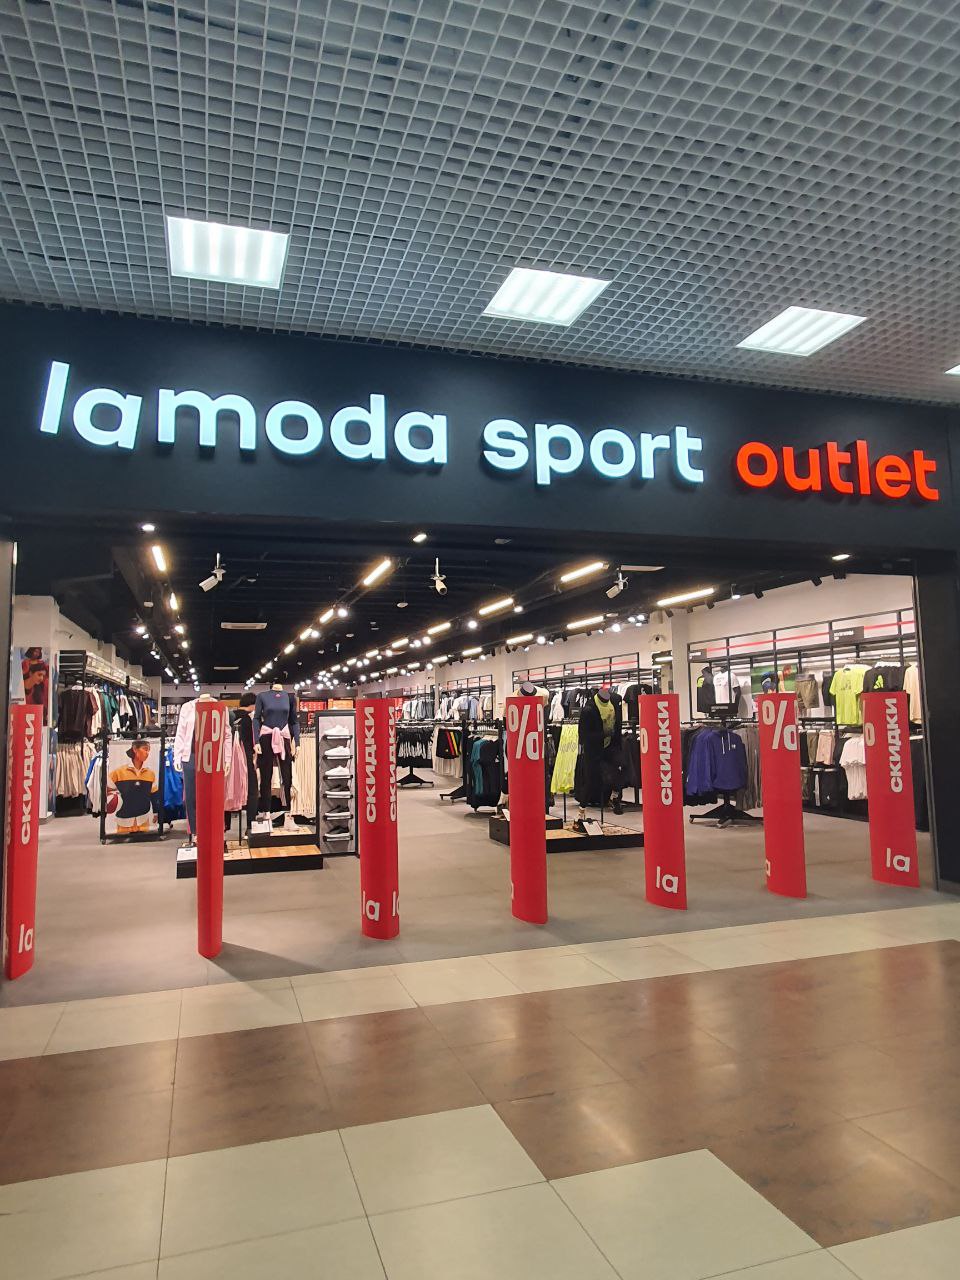 erid: 2SDnjf2ewHr 🎉Рады вам сообщить о ярком открытии нашего нового магазина Lamoda Sport Outlet!